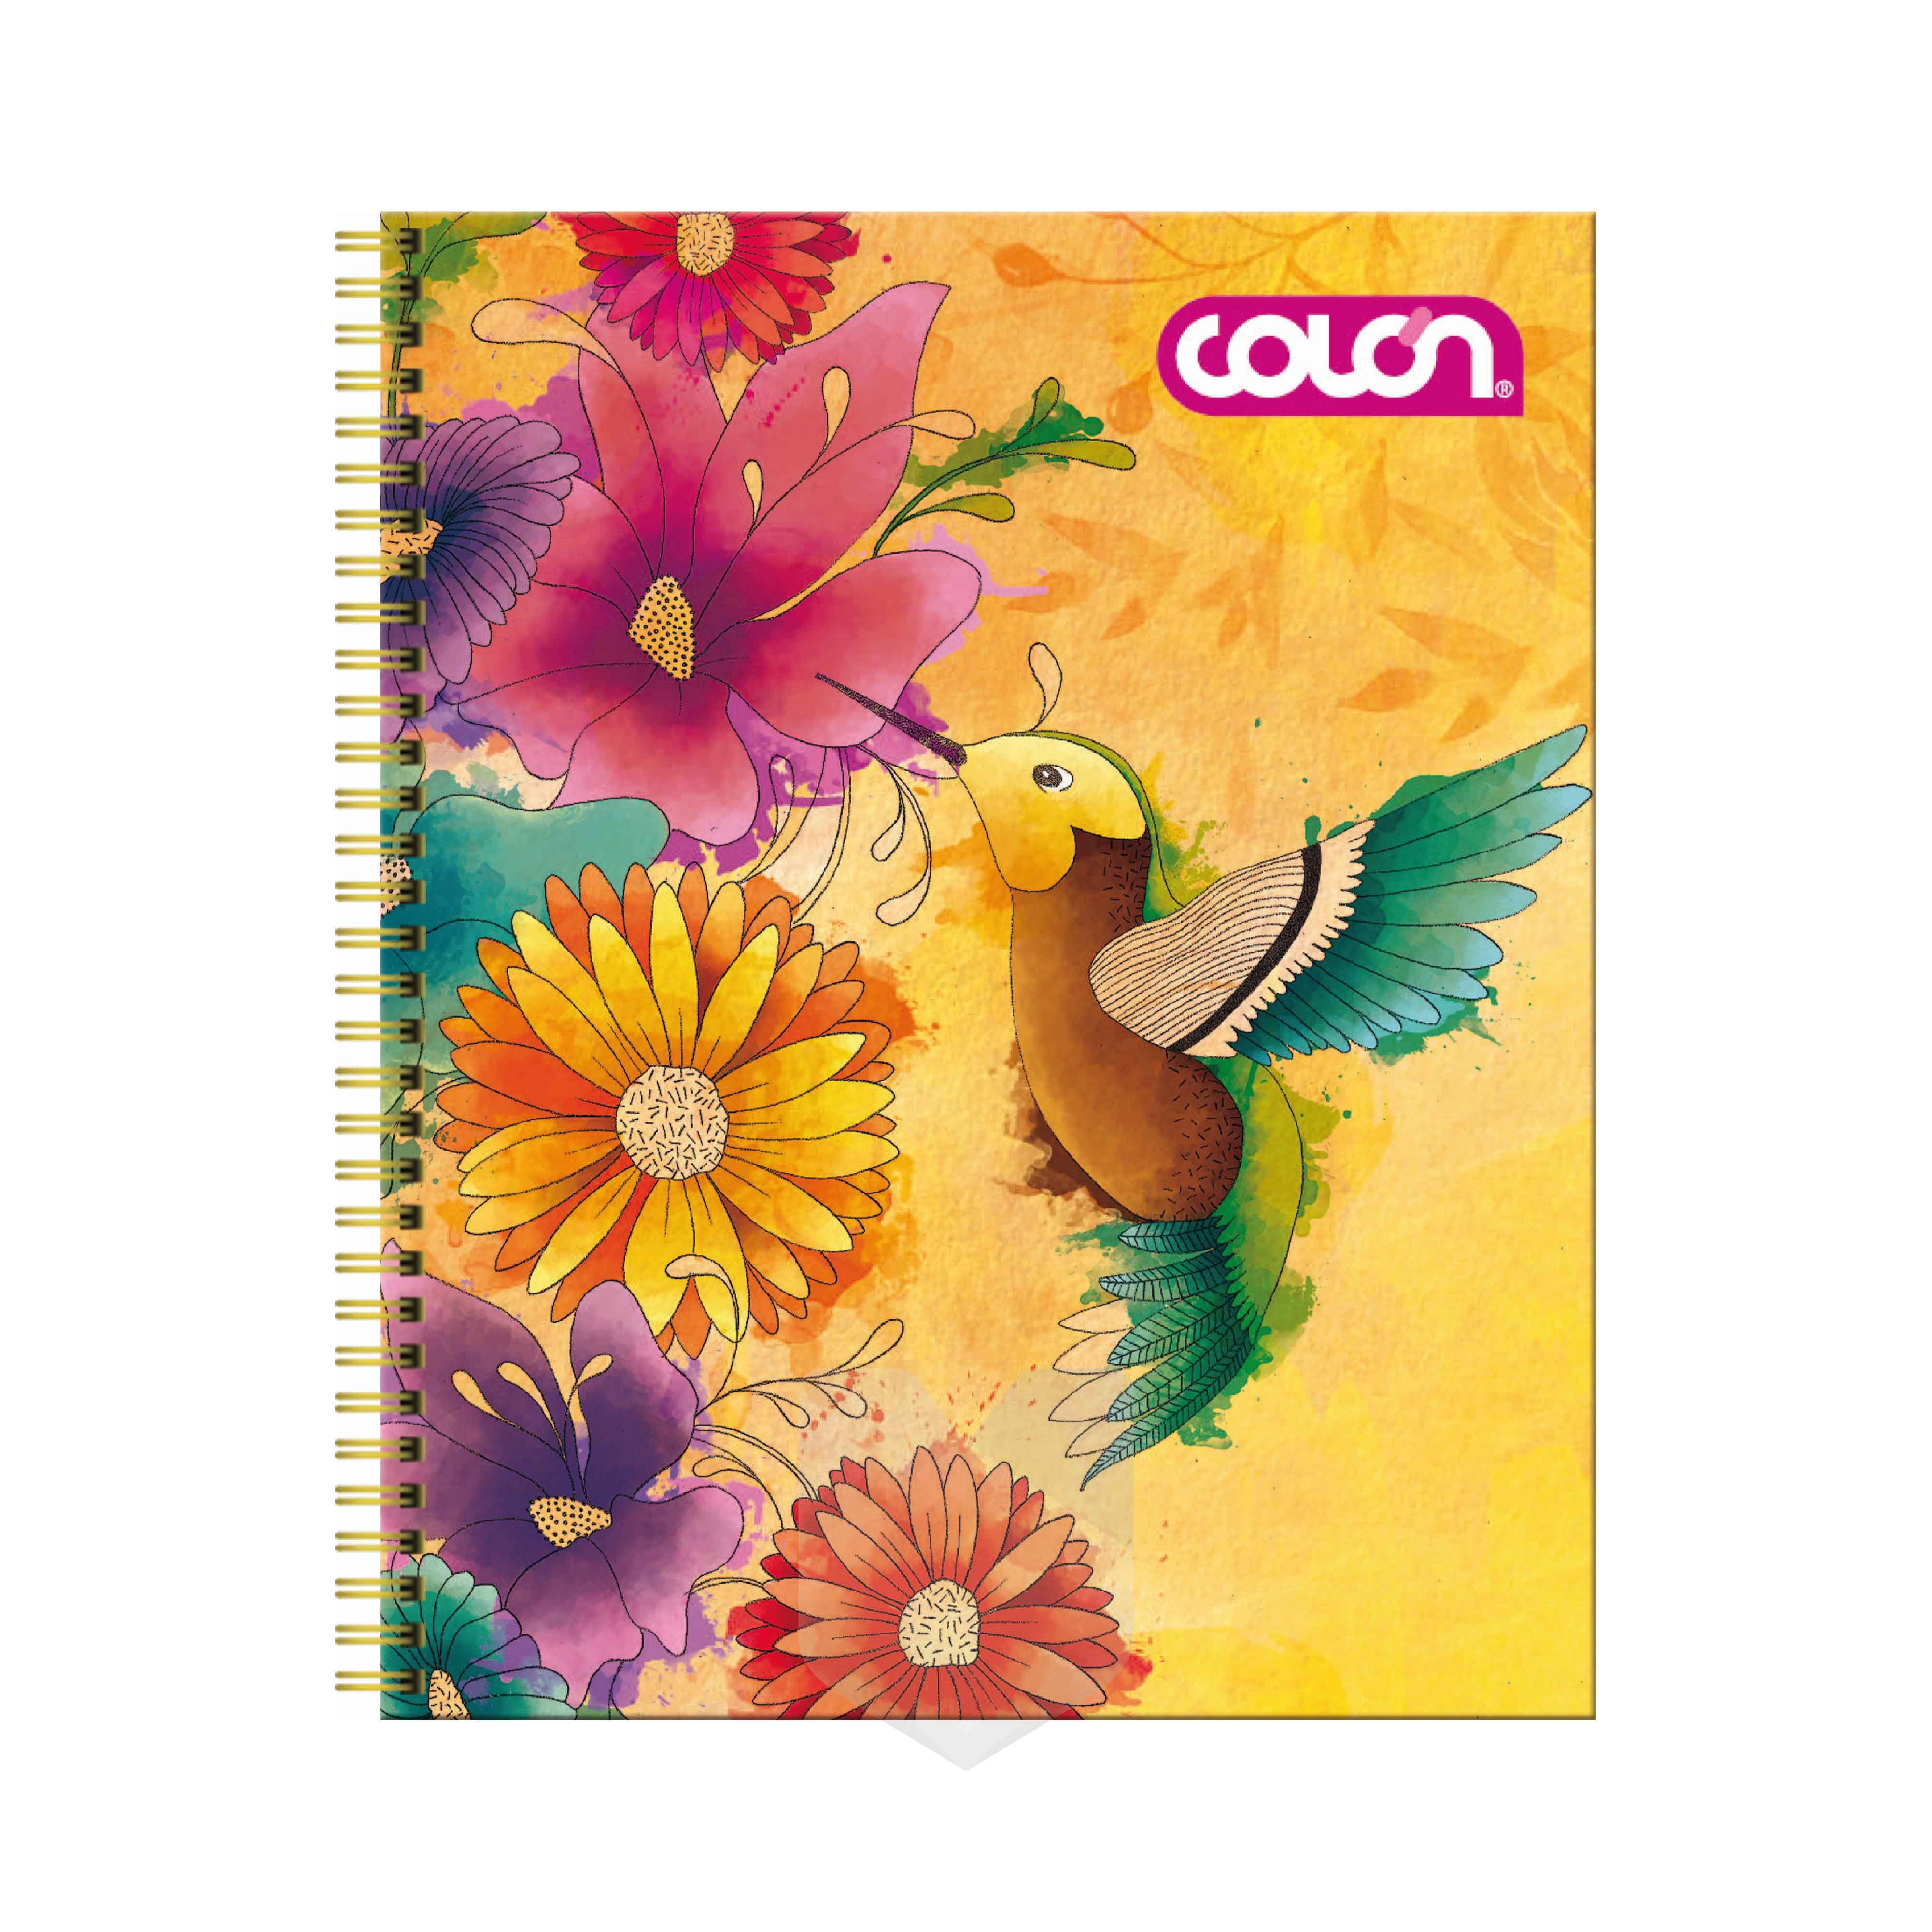 Cuaderno Universitario Te Natura 7 mm 100 Hojas - Colon